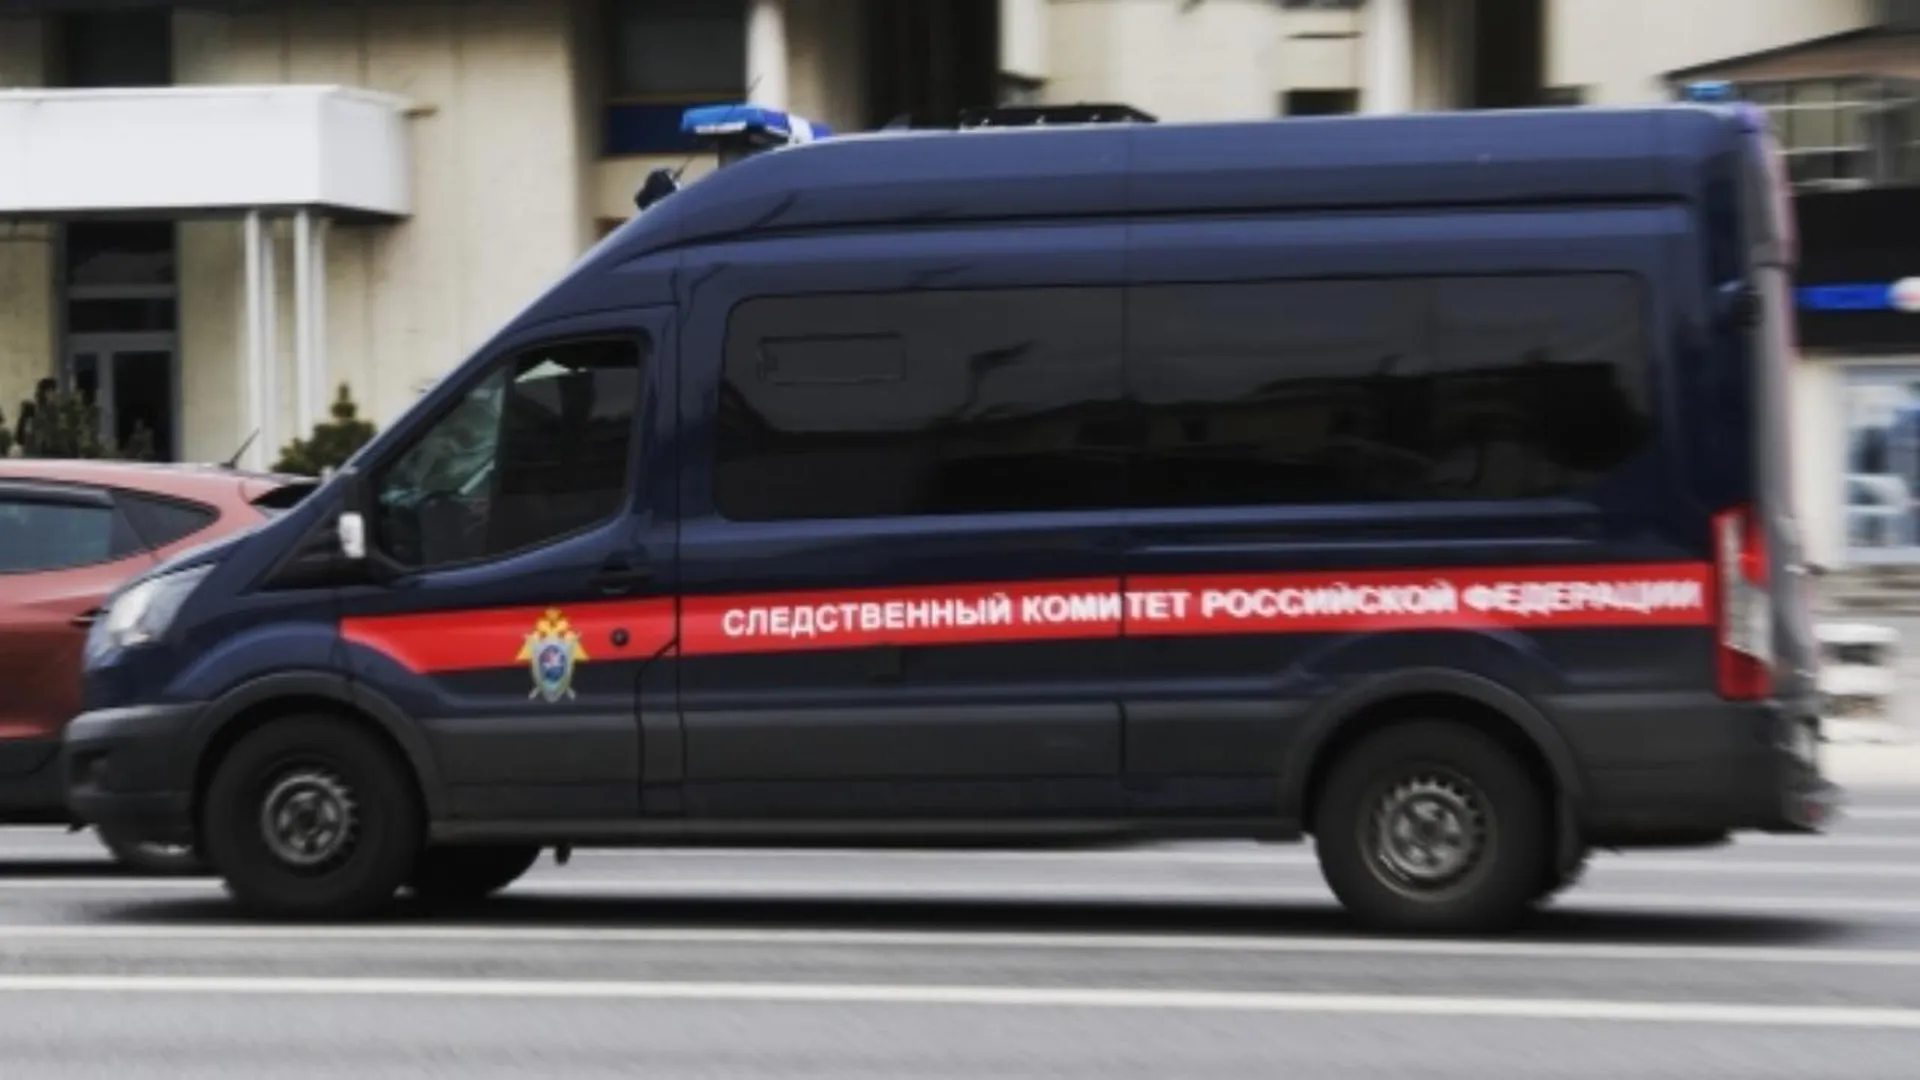 Руководитель налоговой инспекции в Серпухове был задержан за получение взяток